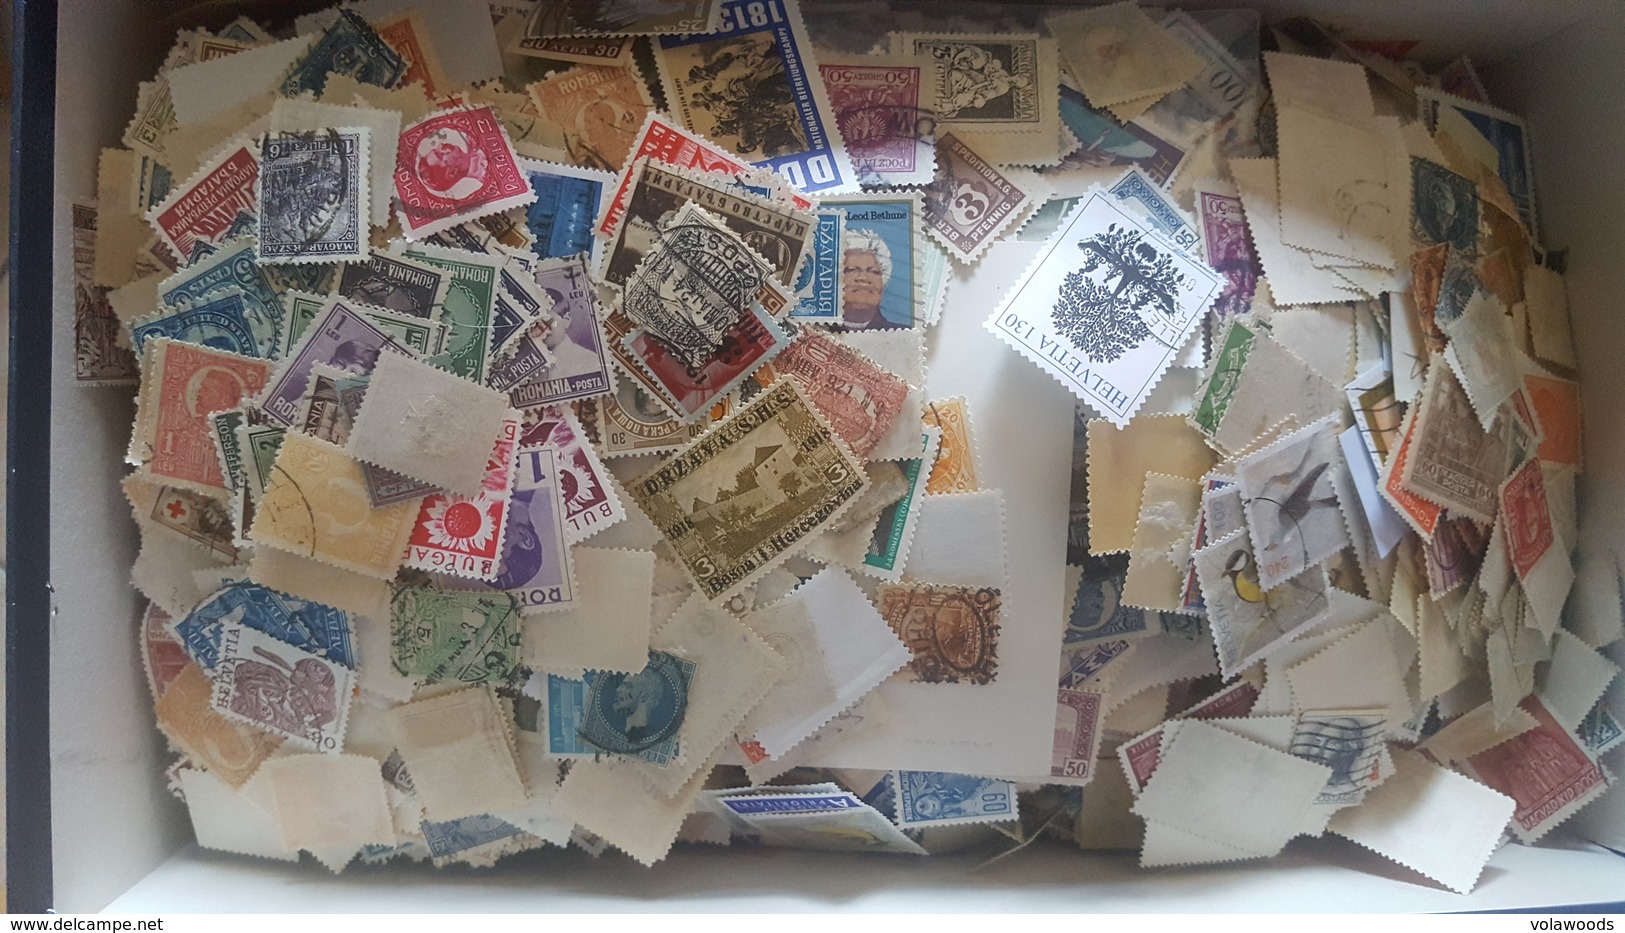 Enorme Lotto di migliaia e migliaia di francobolli mondiali contenuti in una scatola da scarpe!!!!!! Divertentissimo * G